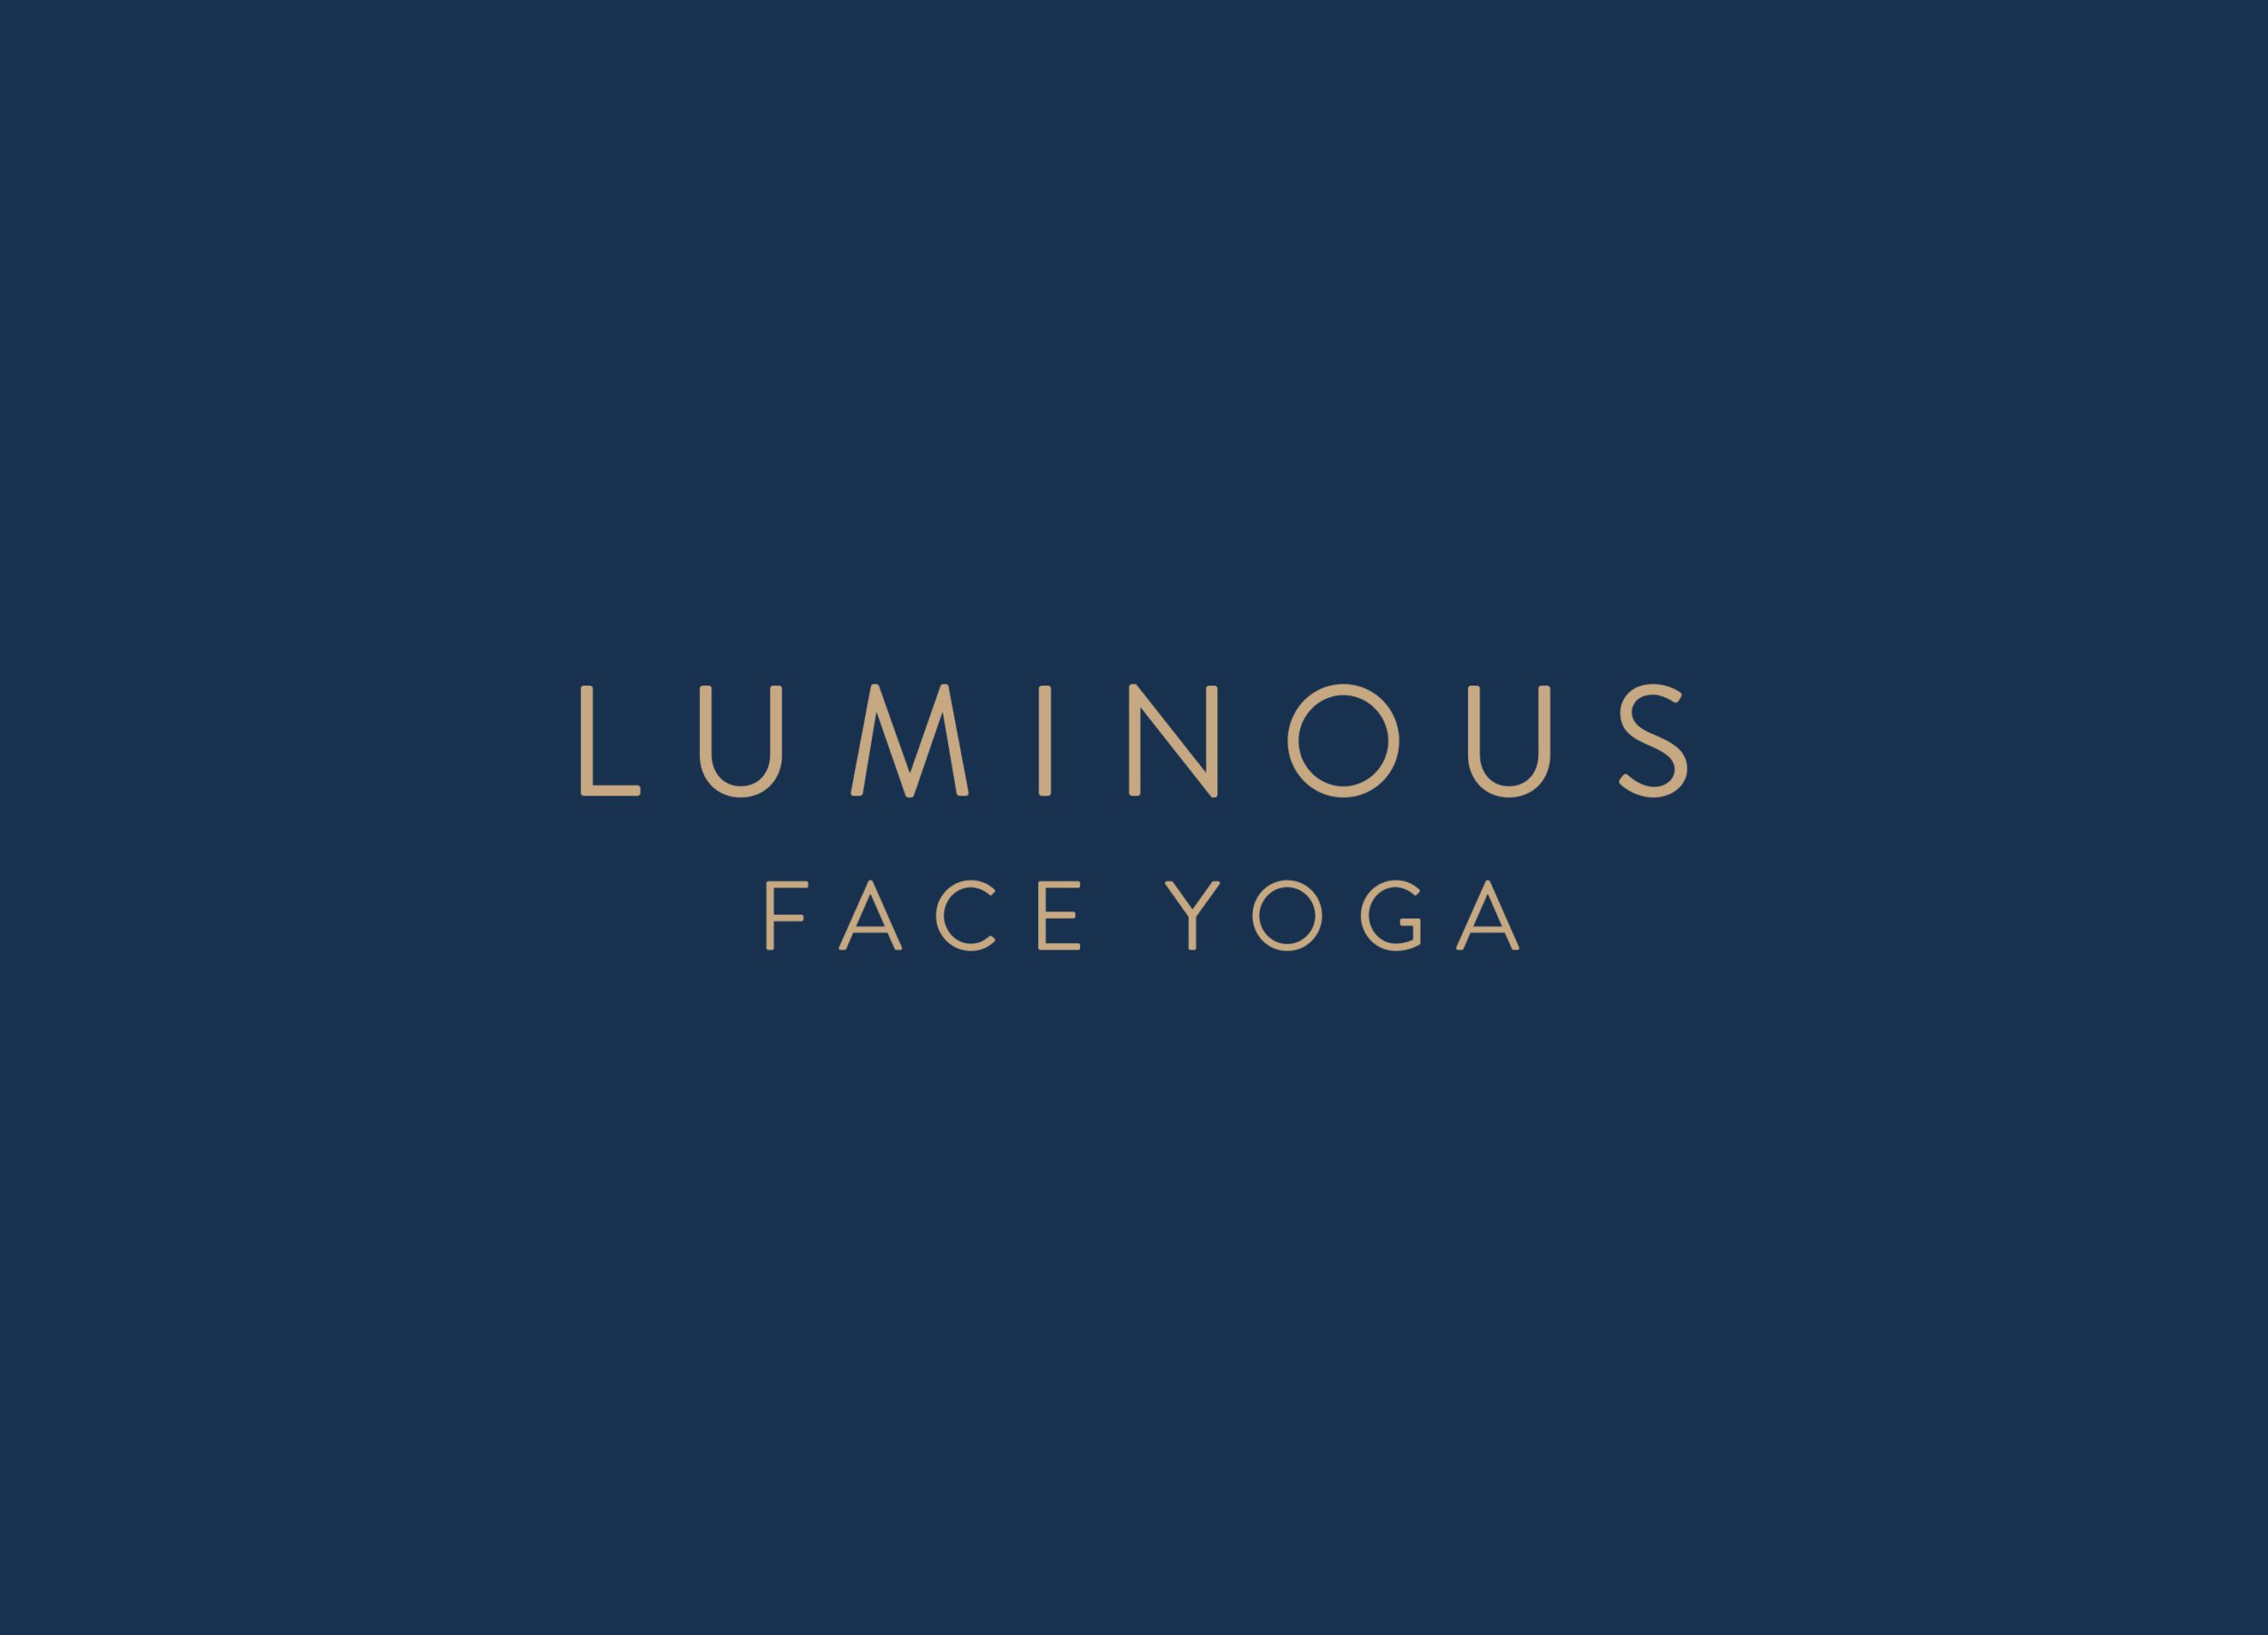 Luminous Face Yoga primary logo